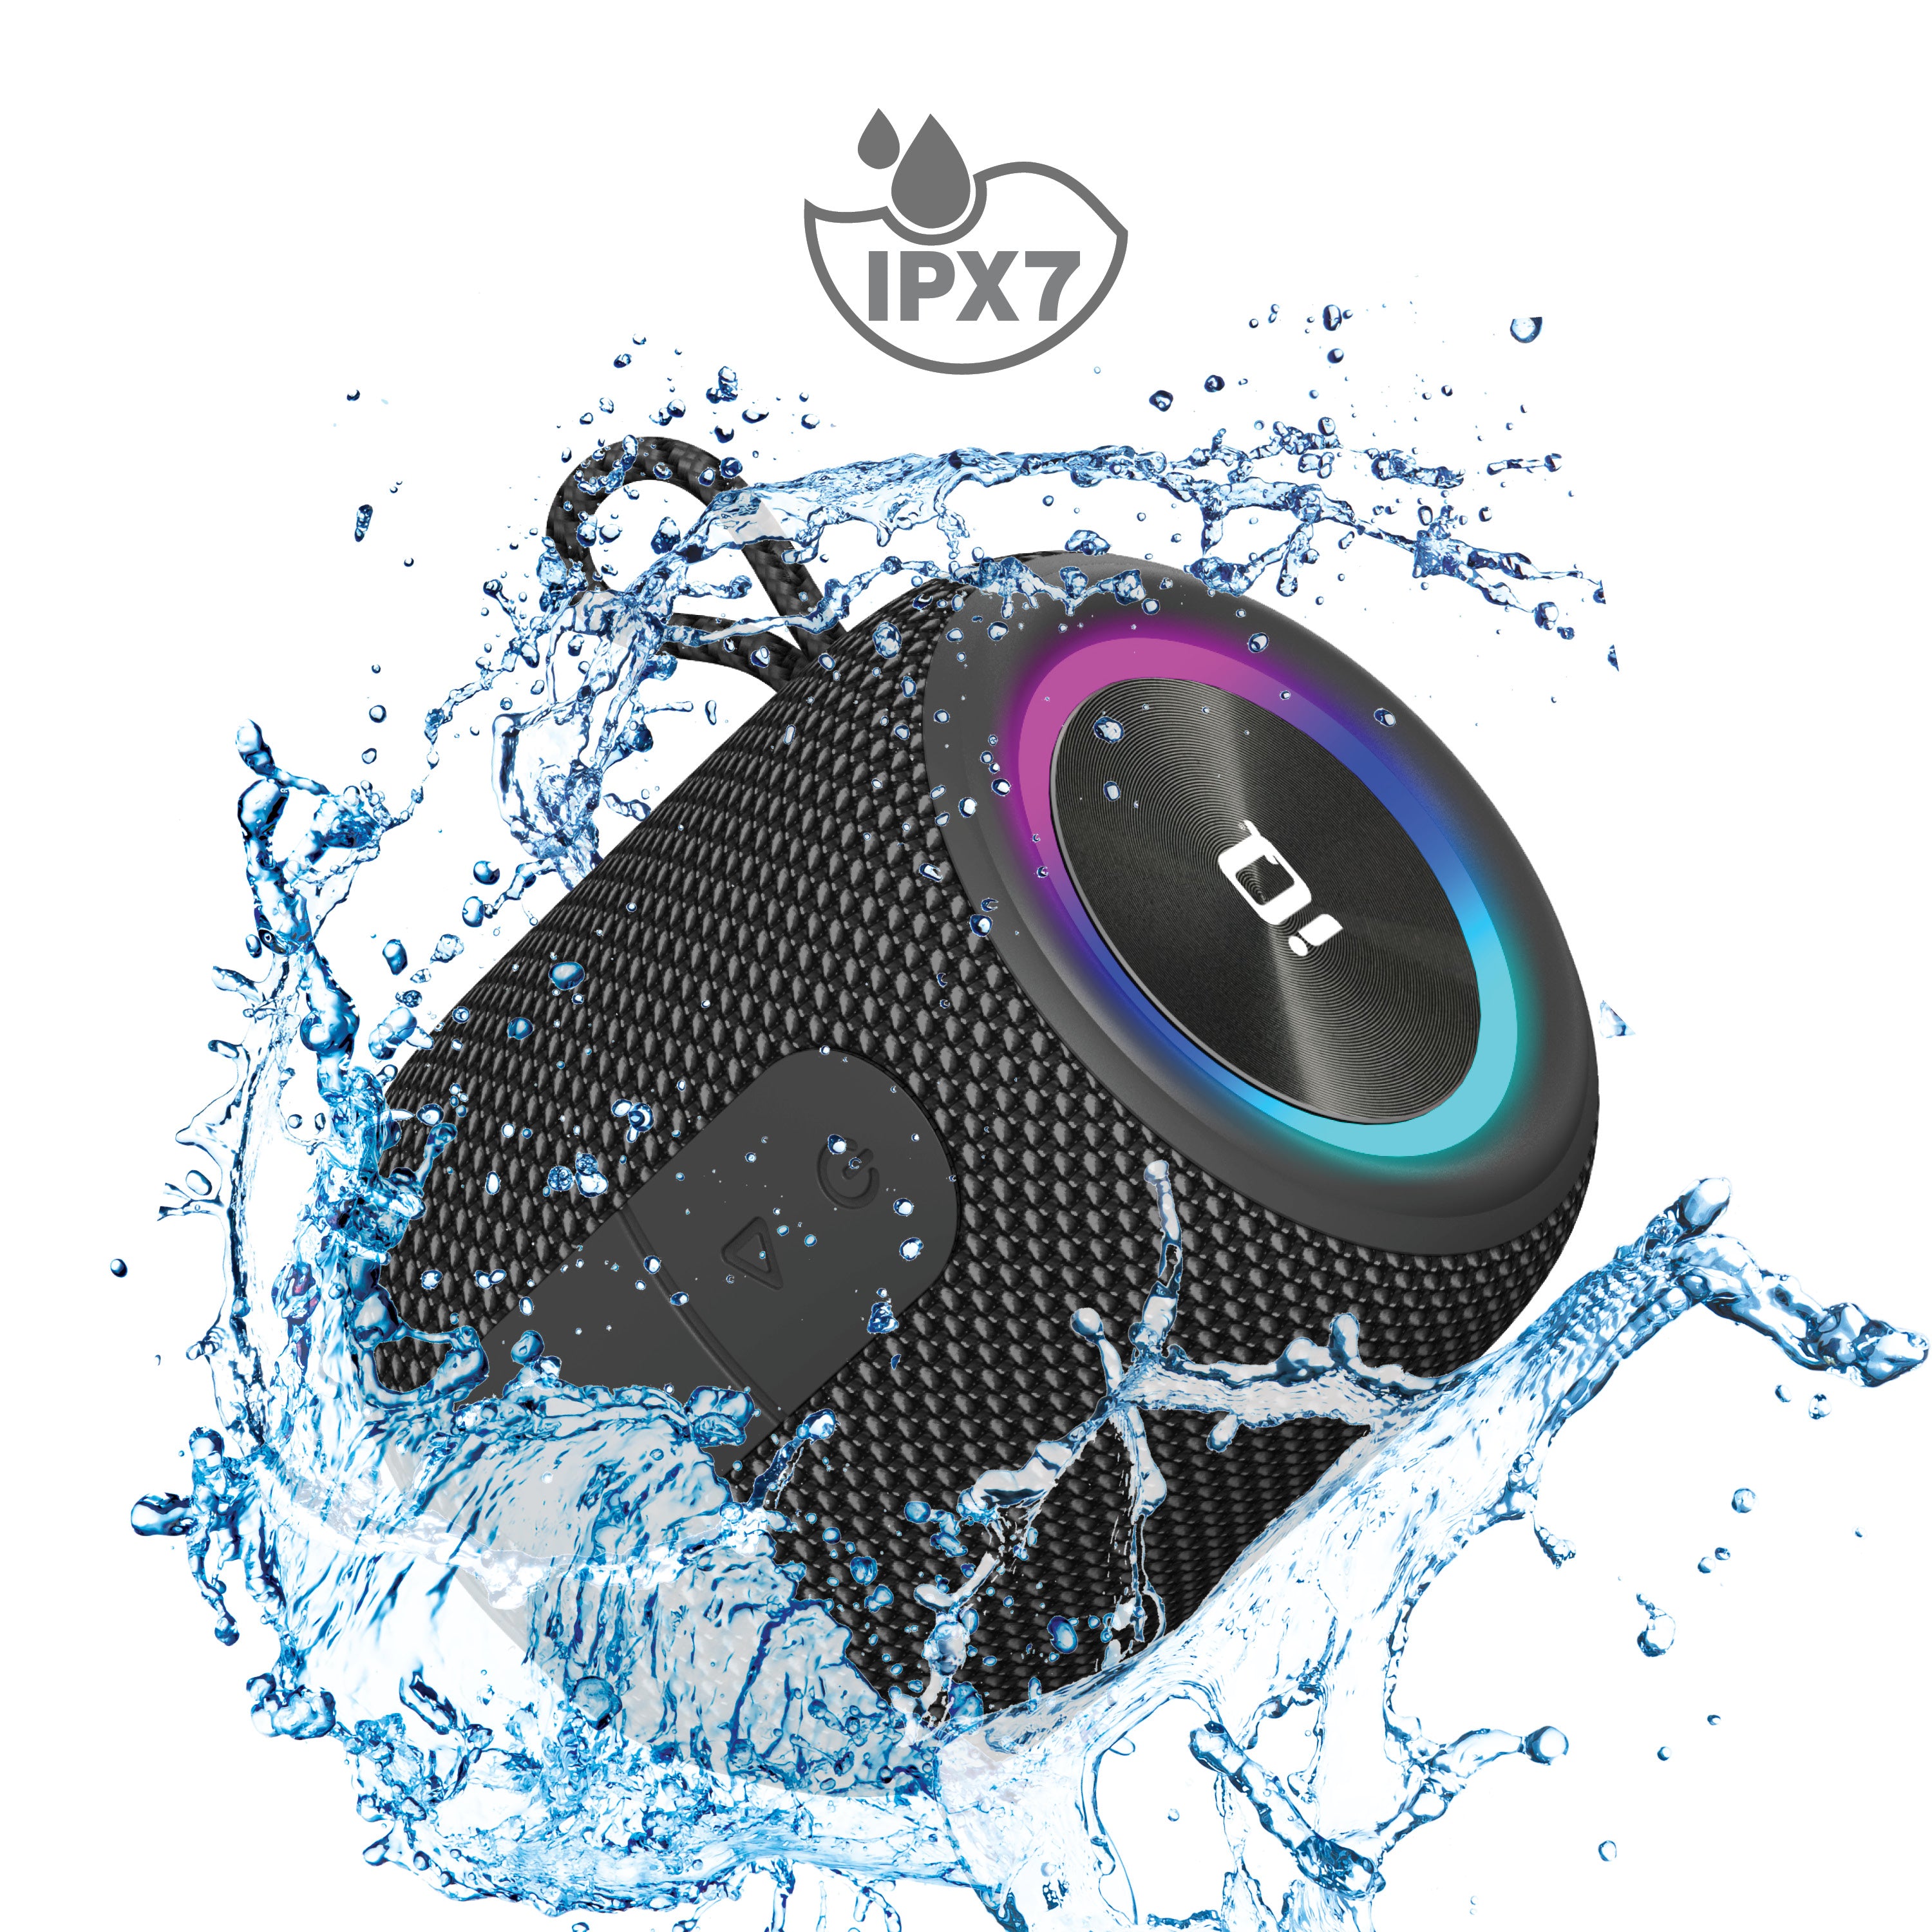 iQ Wave Mini Bluetooth Speaker